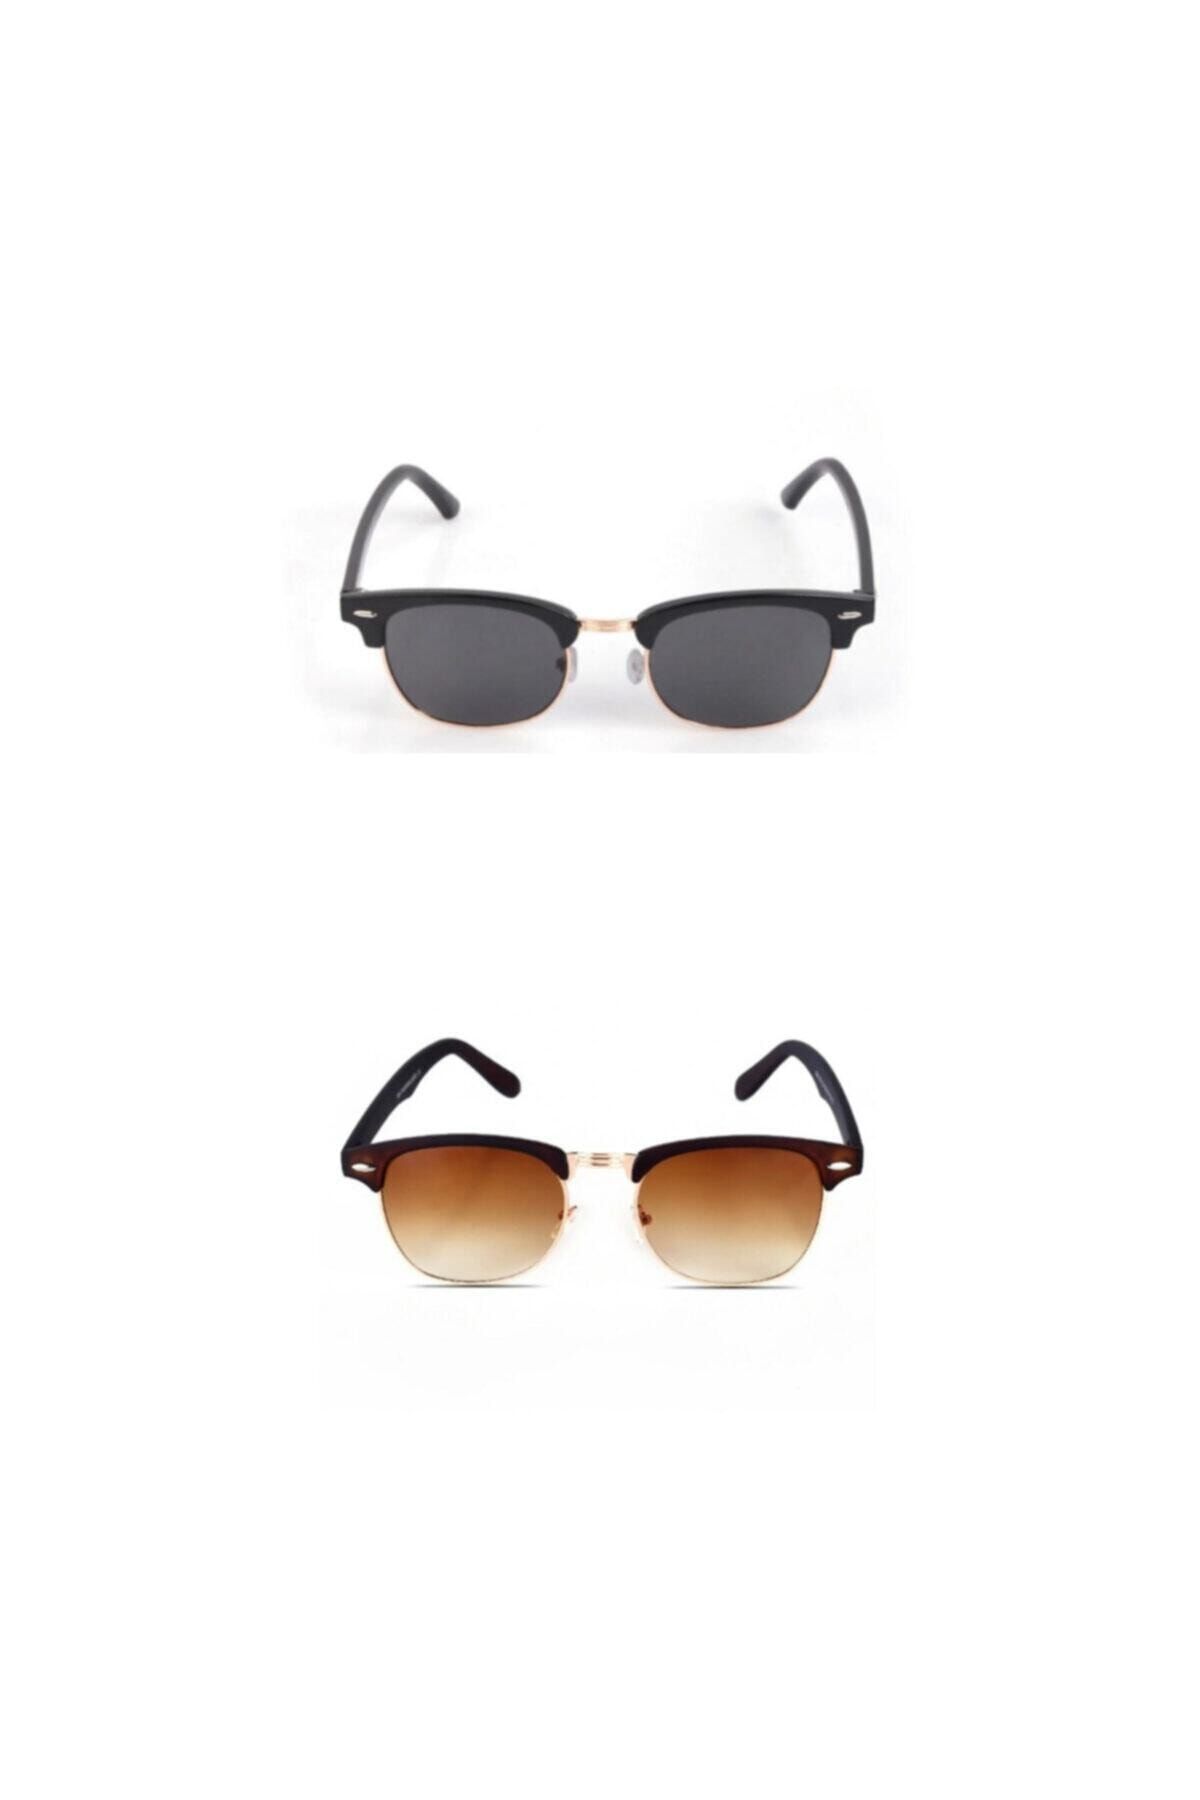 UBK Eyewear Çiftlere Özel Clubmaster Güneş Gözlüğü Kombin